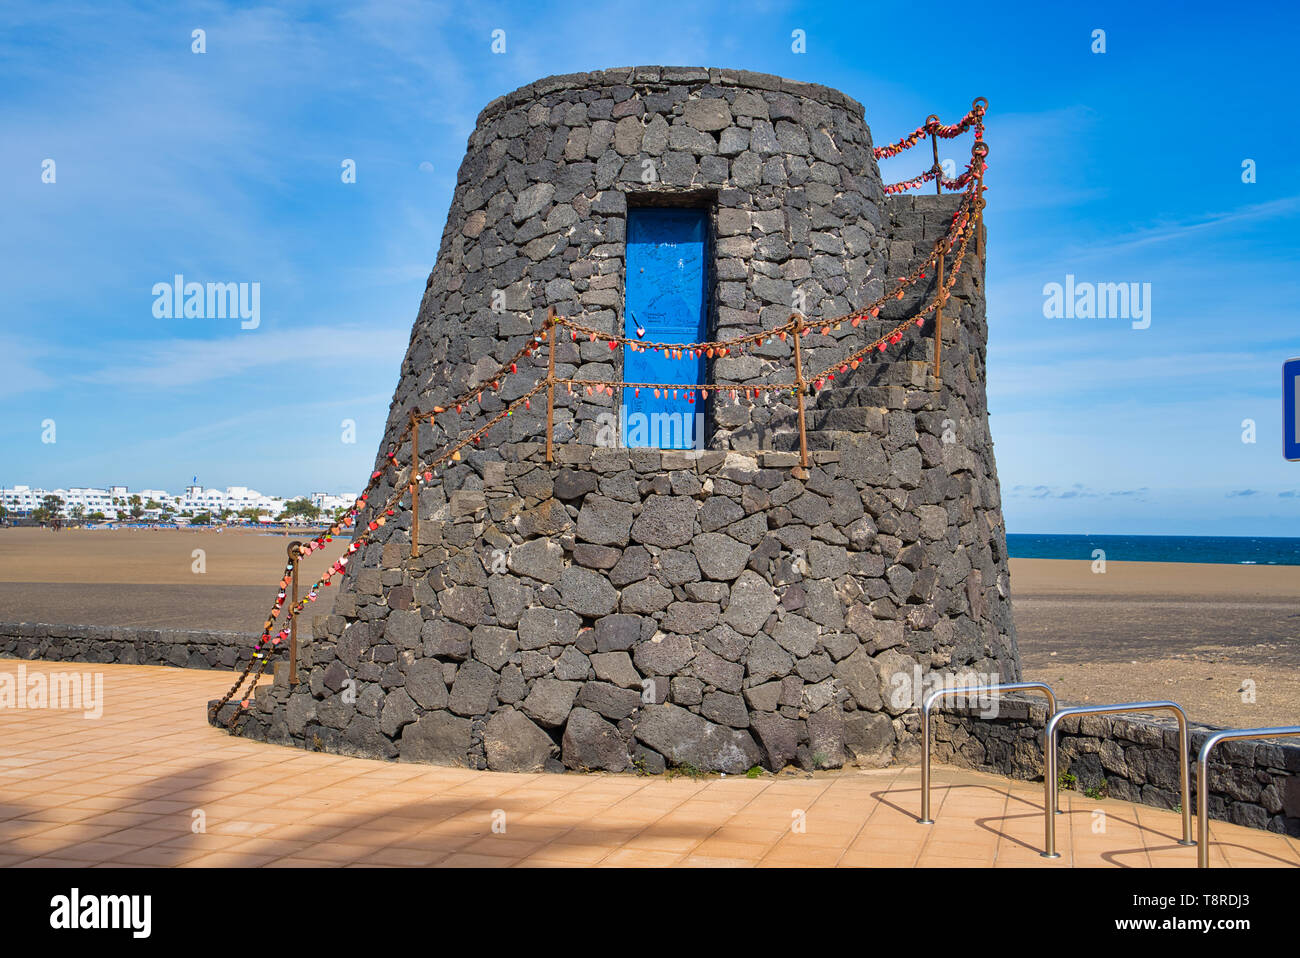 LANZAROTE, Isole canarie, Spagna - 15 Aprile 2019: vecchia torre in pietra / vista dell'Oceano Atlantico e cielo blu / matrimonio si blocca sul mancorrente della sta Foto Stock